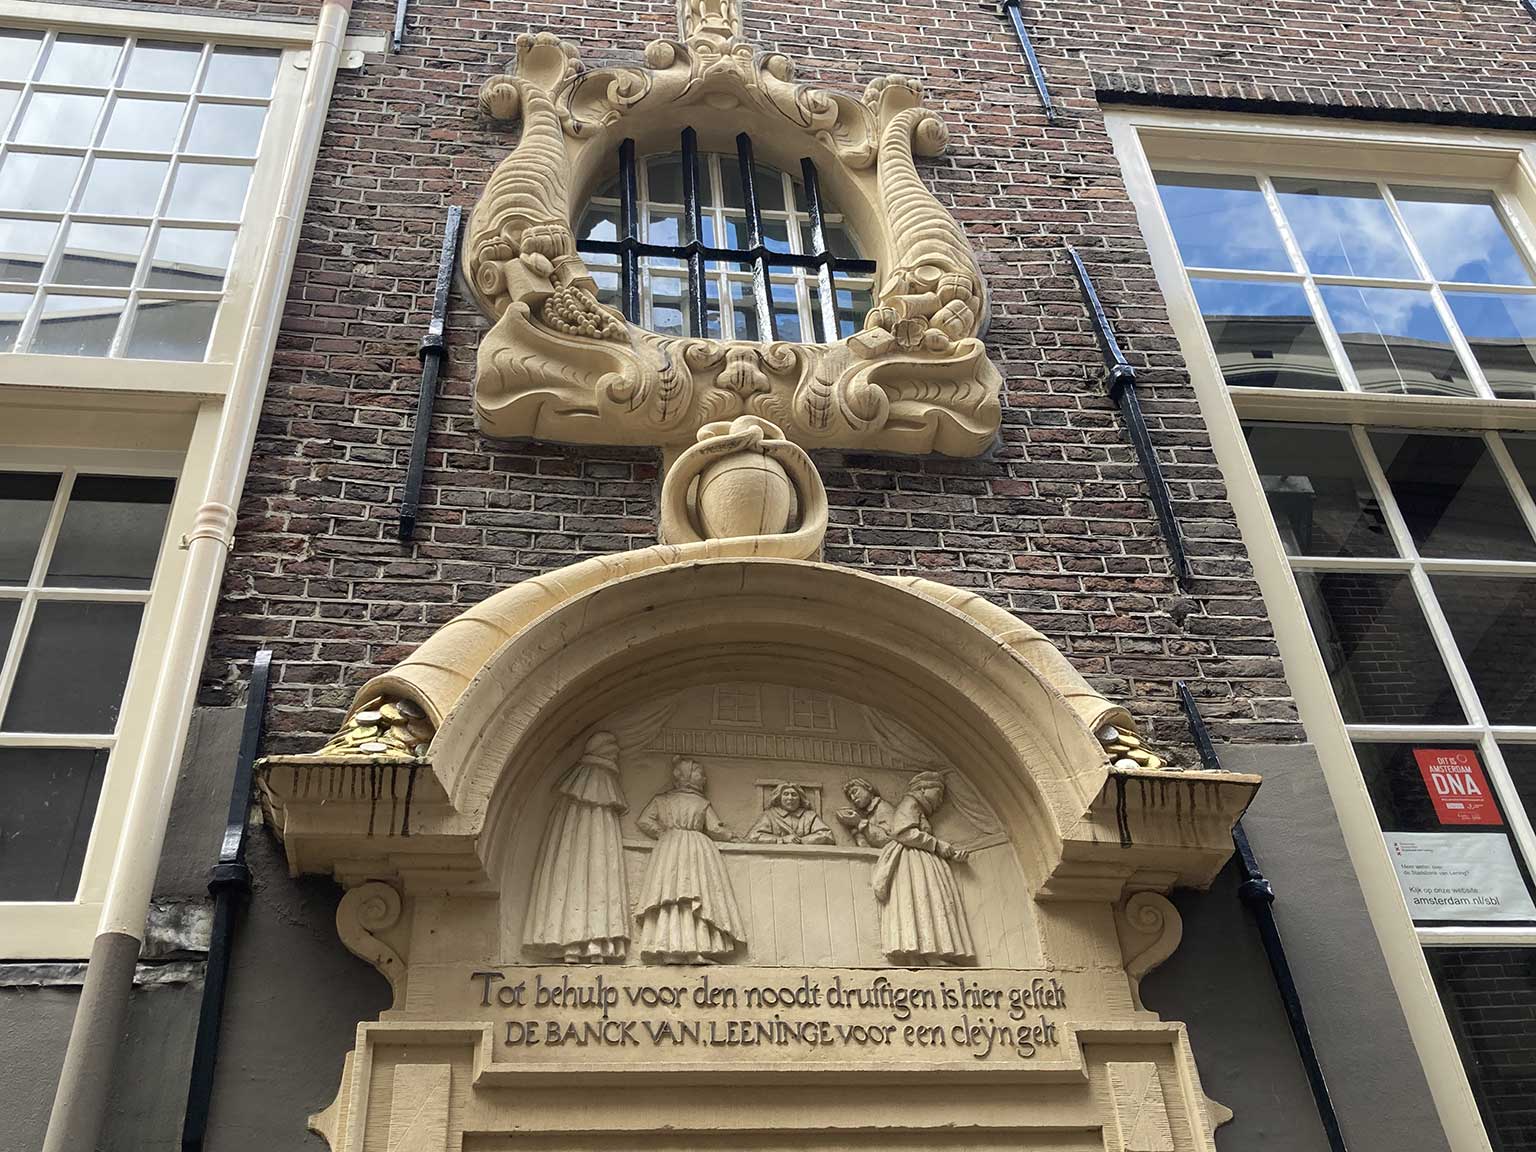 Ingang van de Stadsbank van Lening aan de Enge Lombardsteeg, Amsterdam